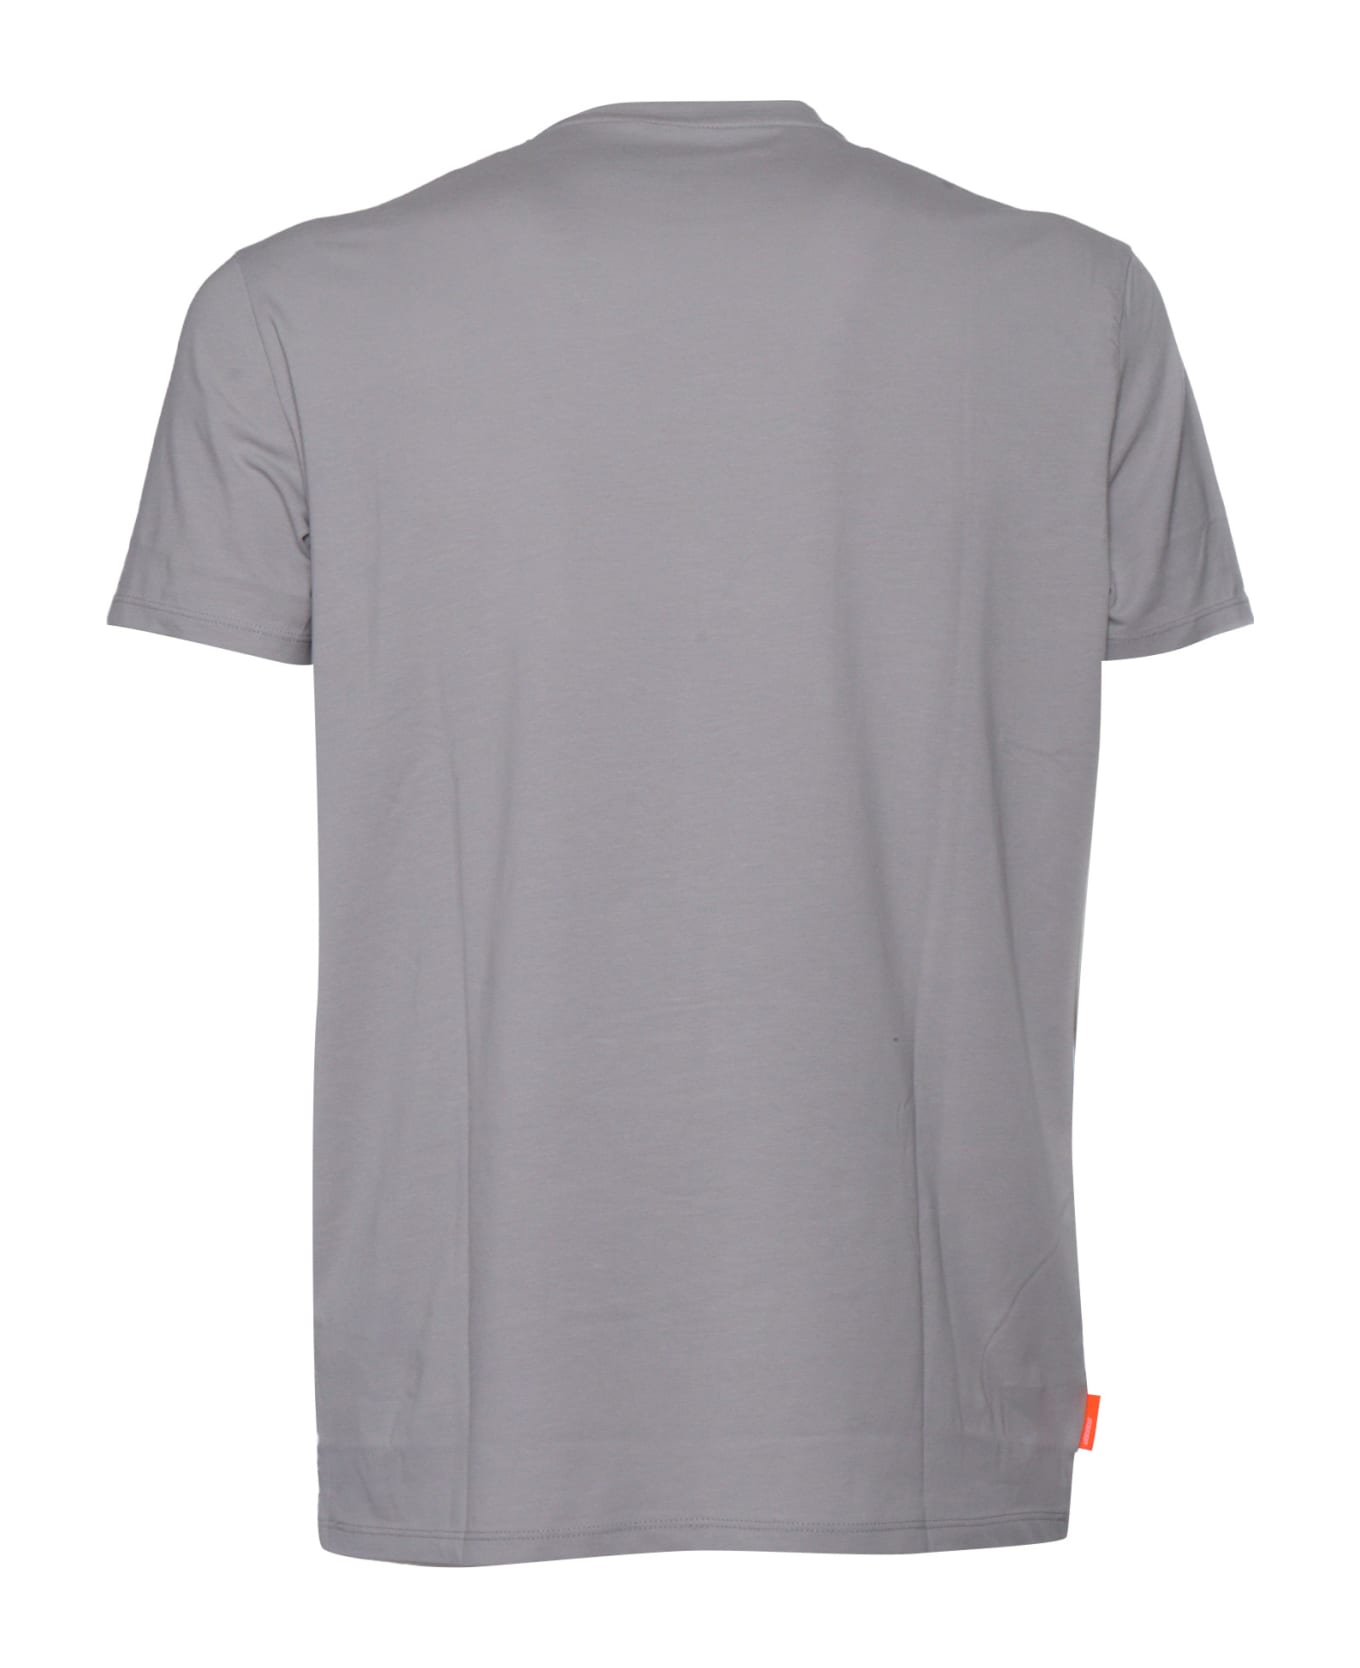 RRD - Roberto Ricci Design Gray Revo T-shirt - GREY